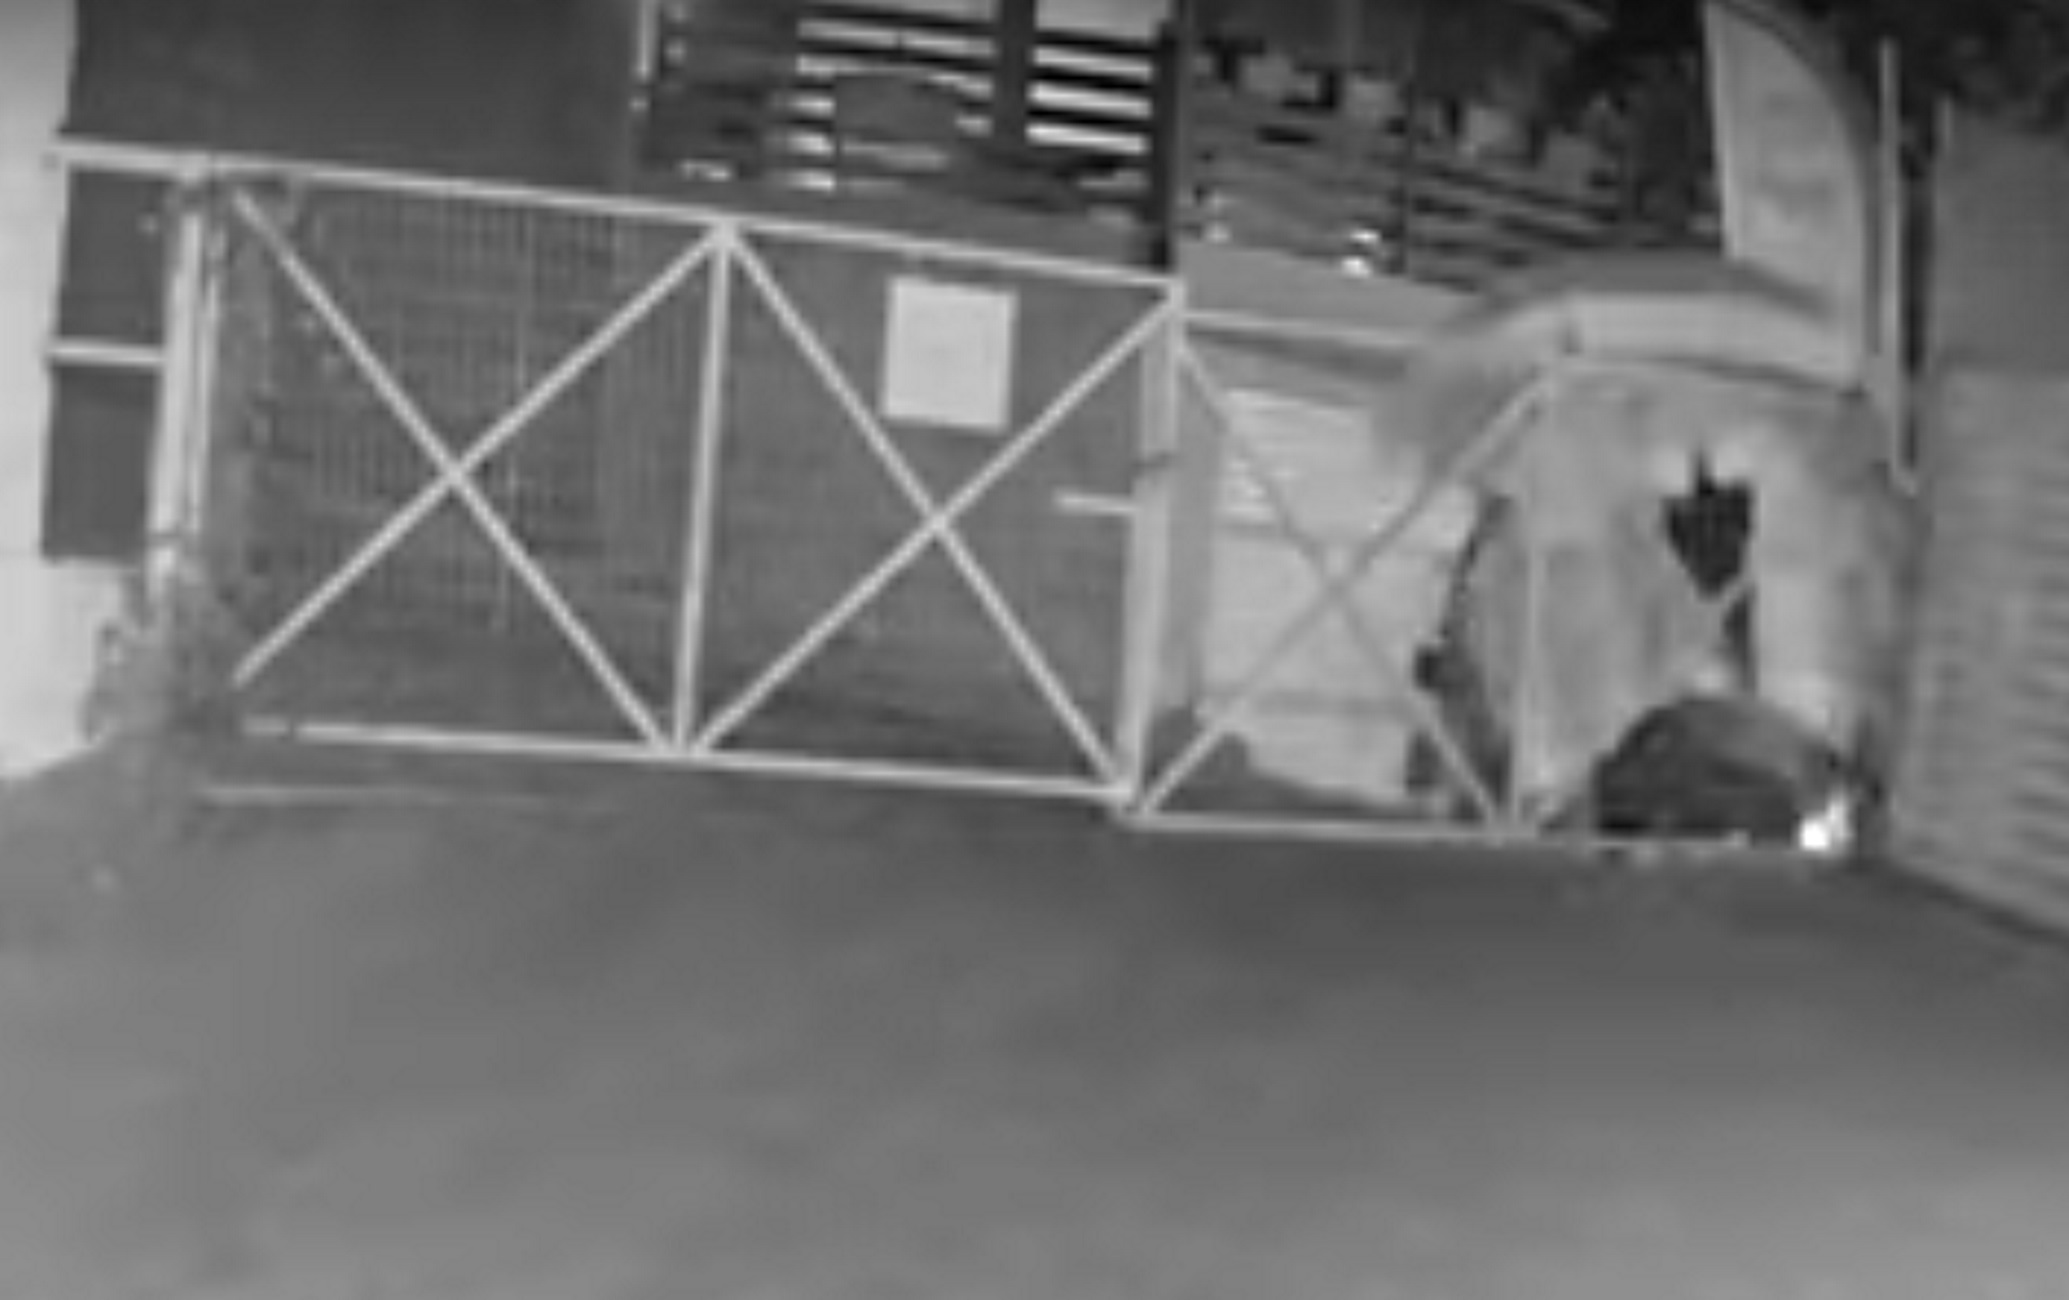 Εμπρησμός στην Πάργα: Το βίντεο ντοκουμέντο και ο εμπρηστής που εμφανίστηκε ξαφνικά με ένα σεντόνι